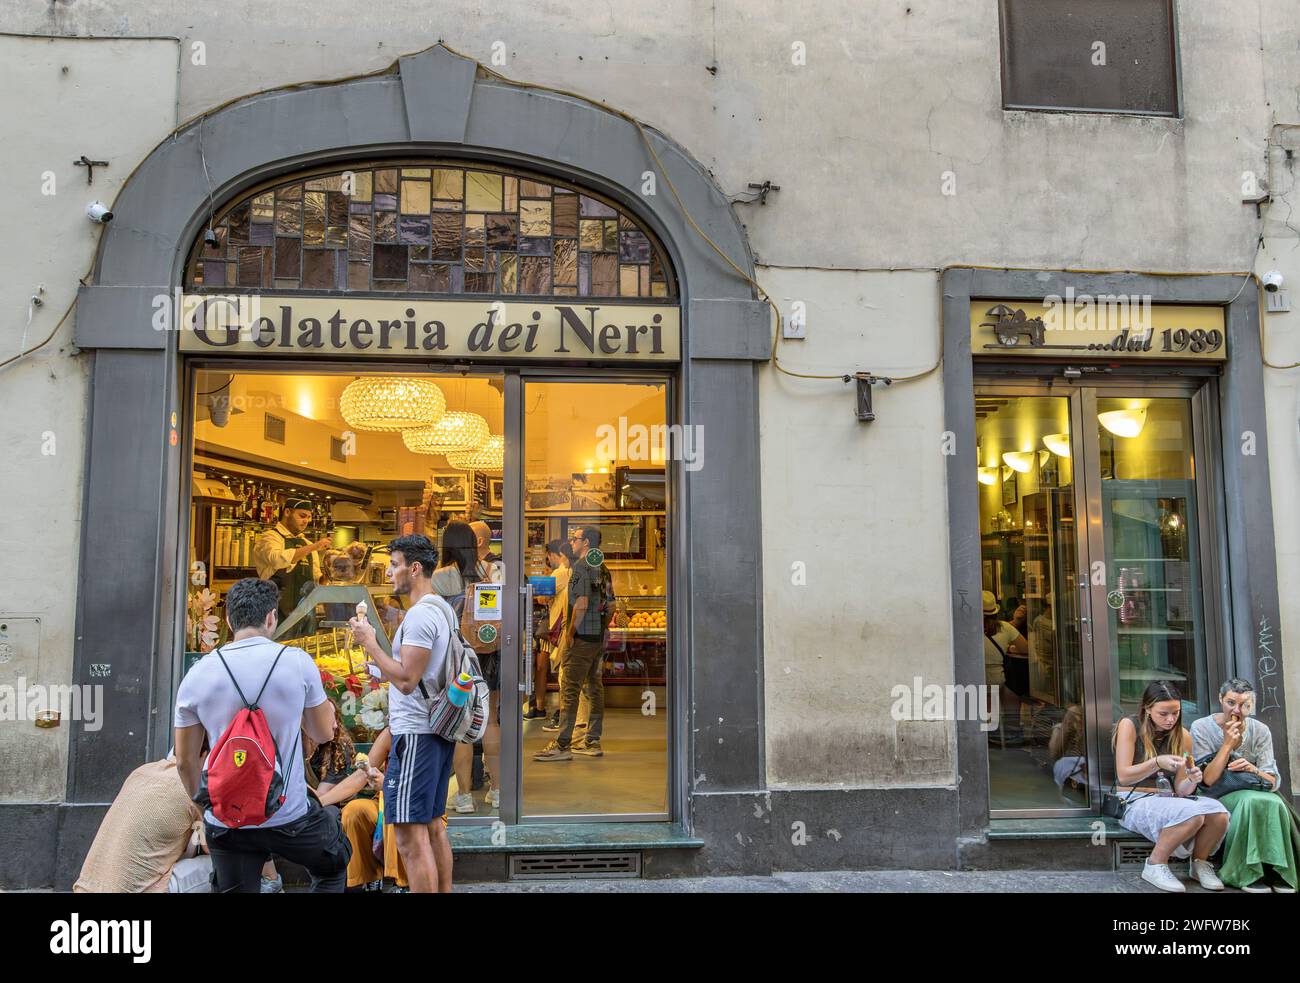 Les gens qui achètent de la glace à Gelateria dei Neri, sur la via dei Neri, l'un des meilleurs magasins de glace de Florence, Italie Banque D'Images